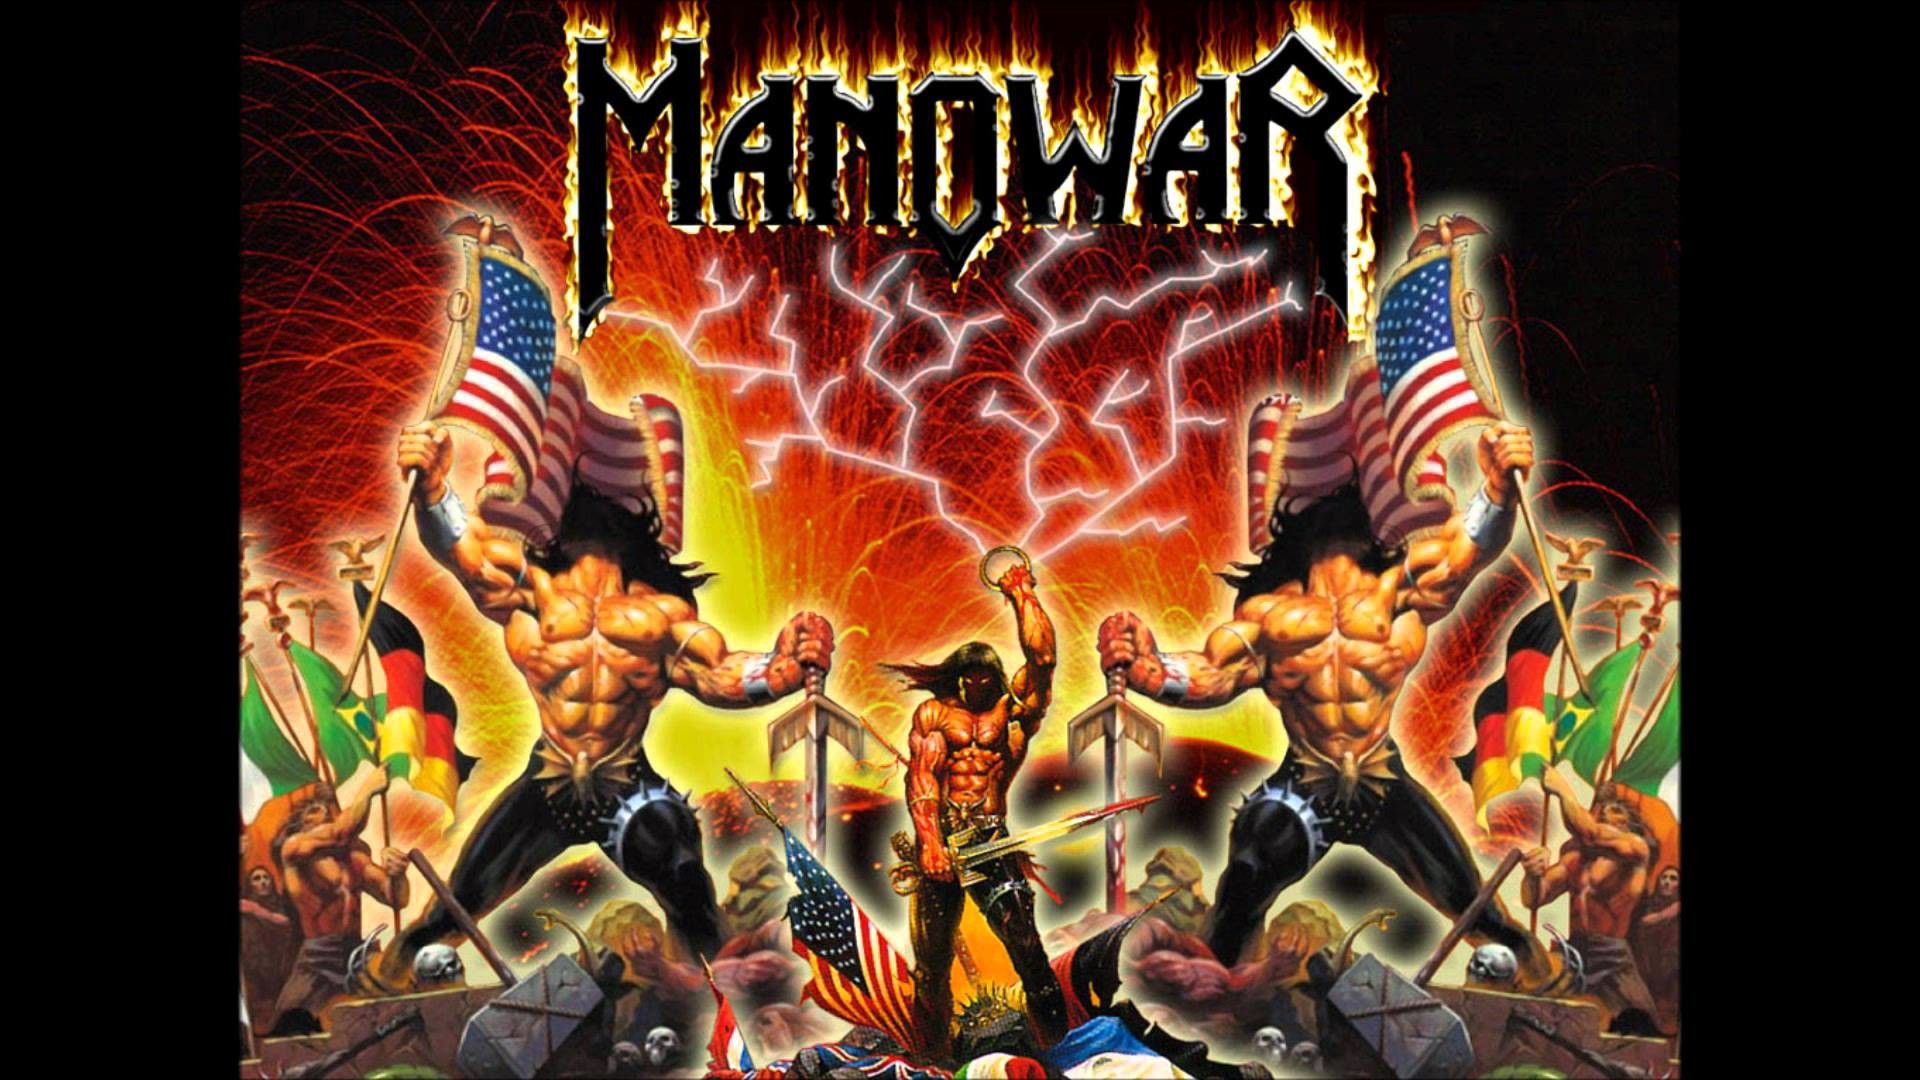 Manowar united. Мановар фото группы. Группа Manowar 2021. Постеры группы Manowar. Обложки дисков Manowar.